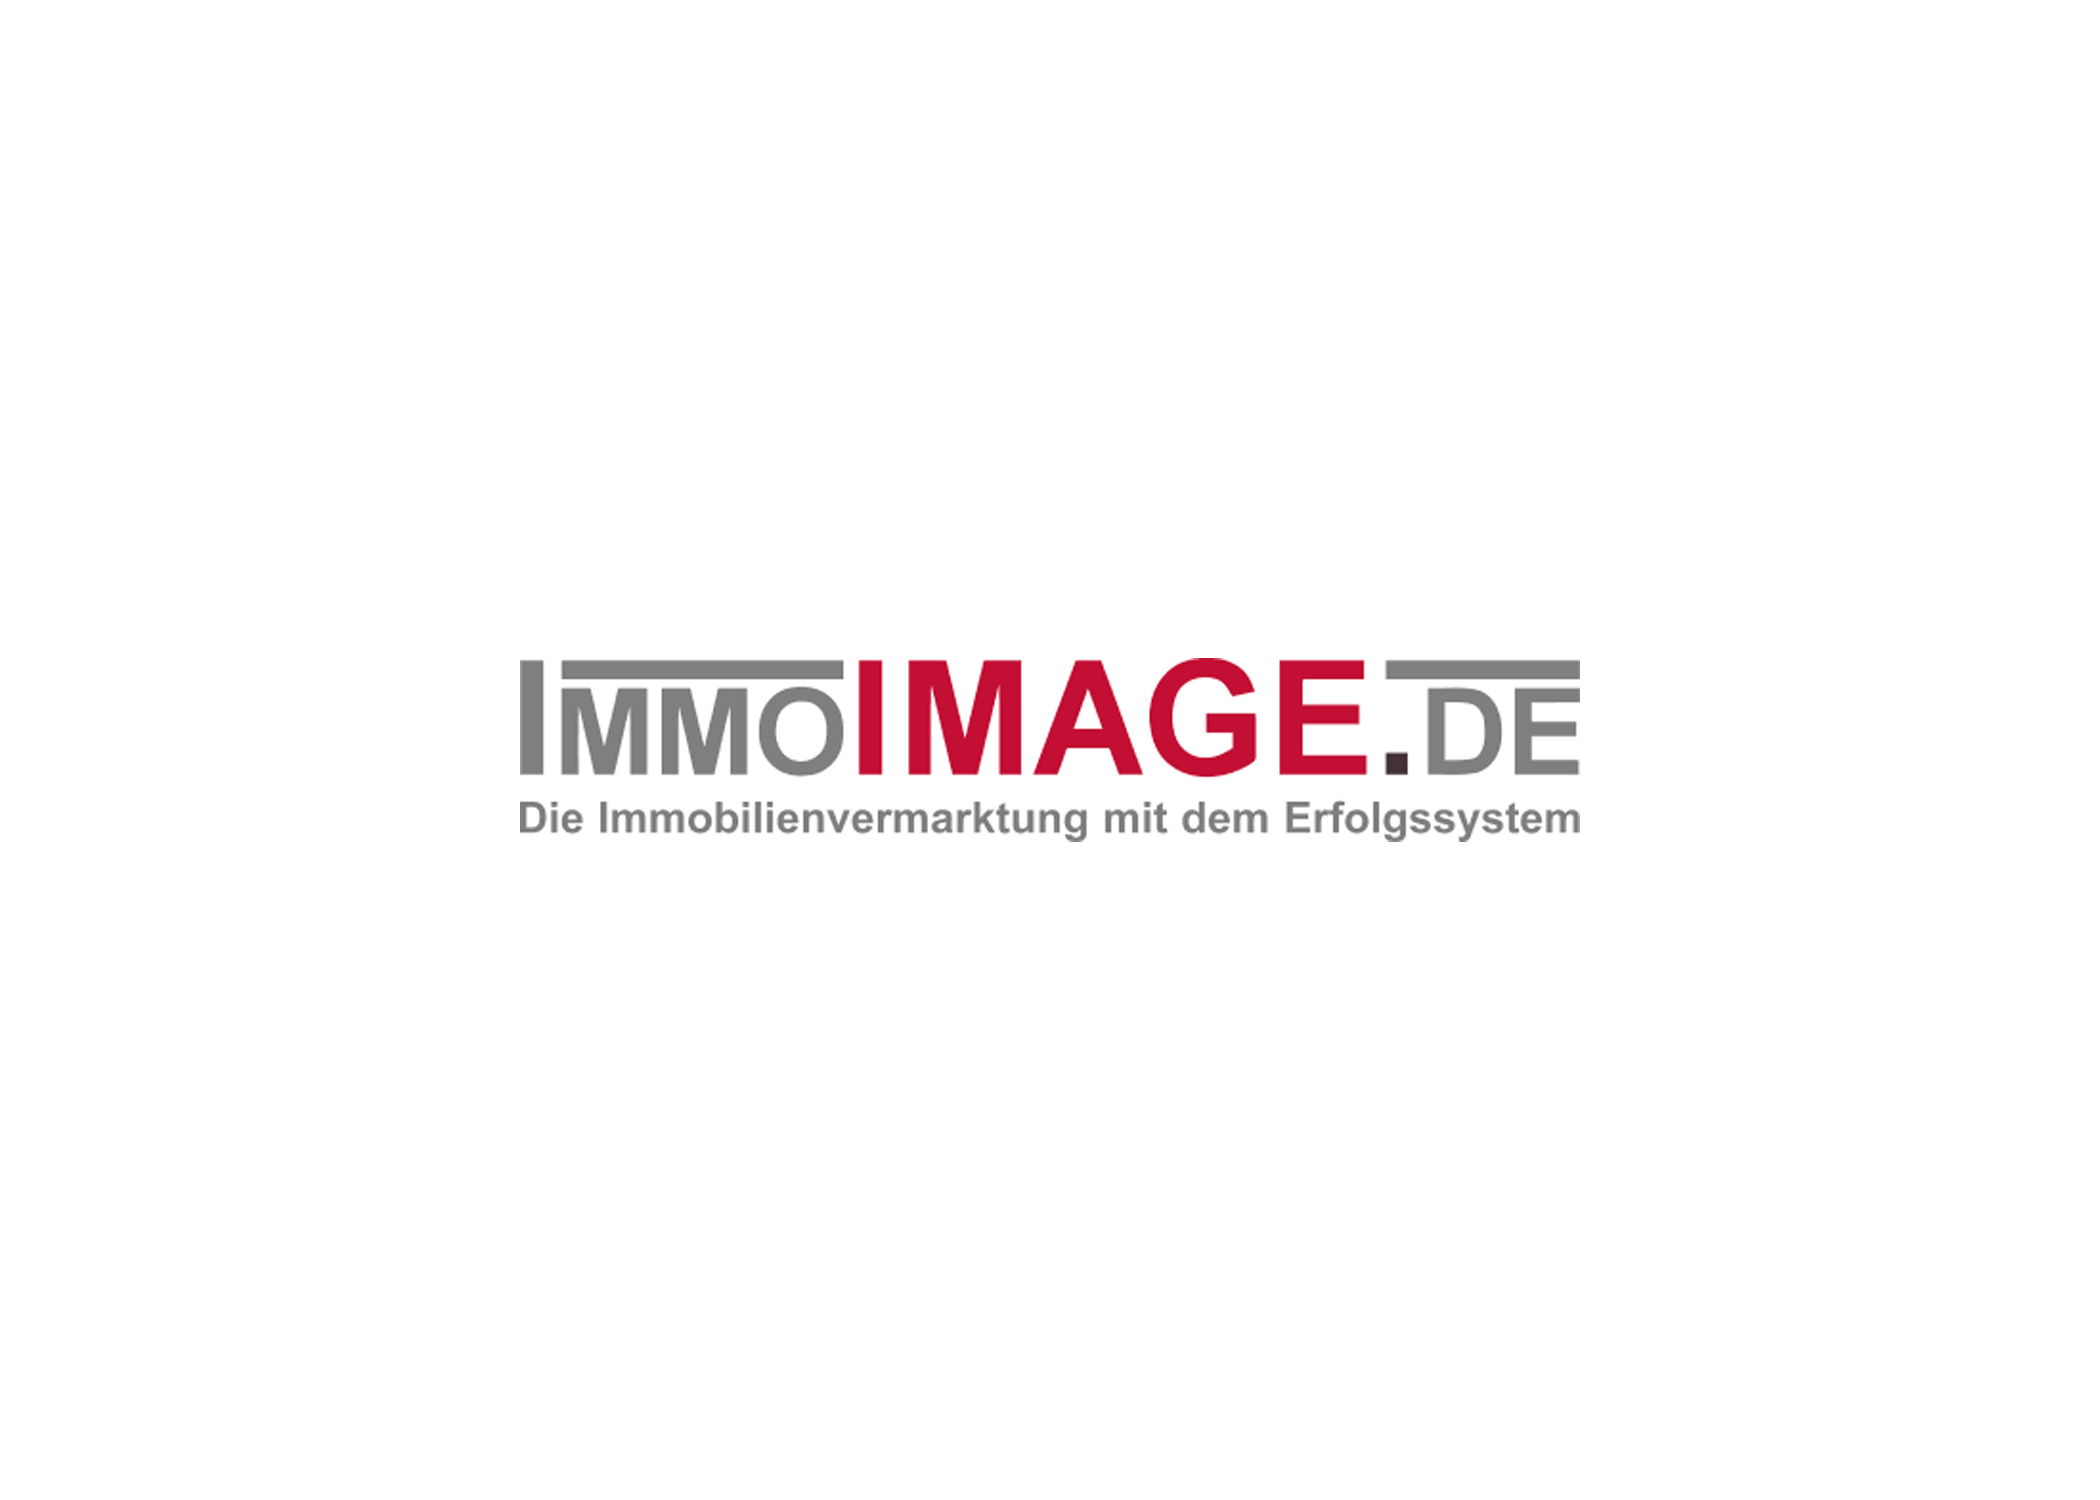 Logo der Firma IMMOIMAGE.DE aus Darmstadt